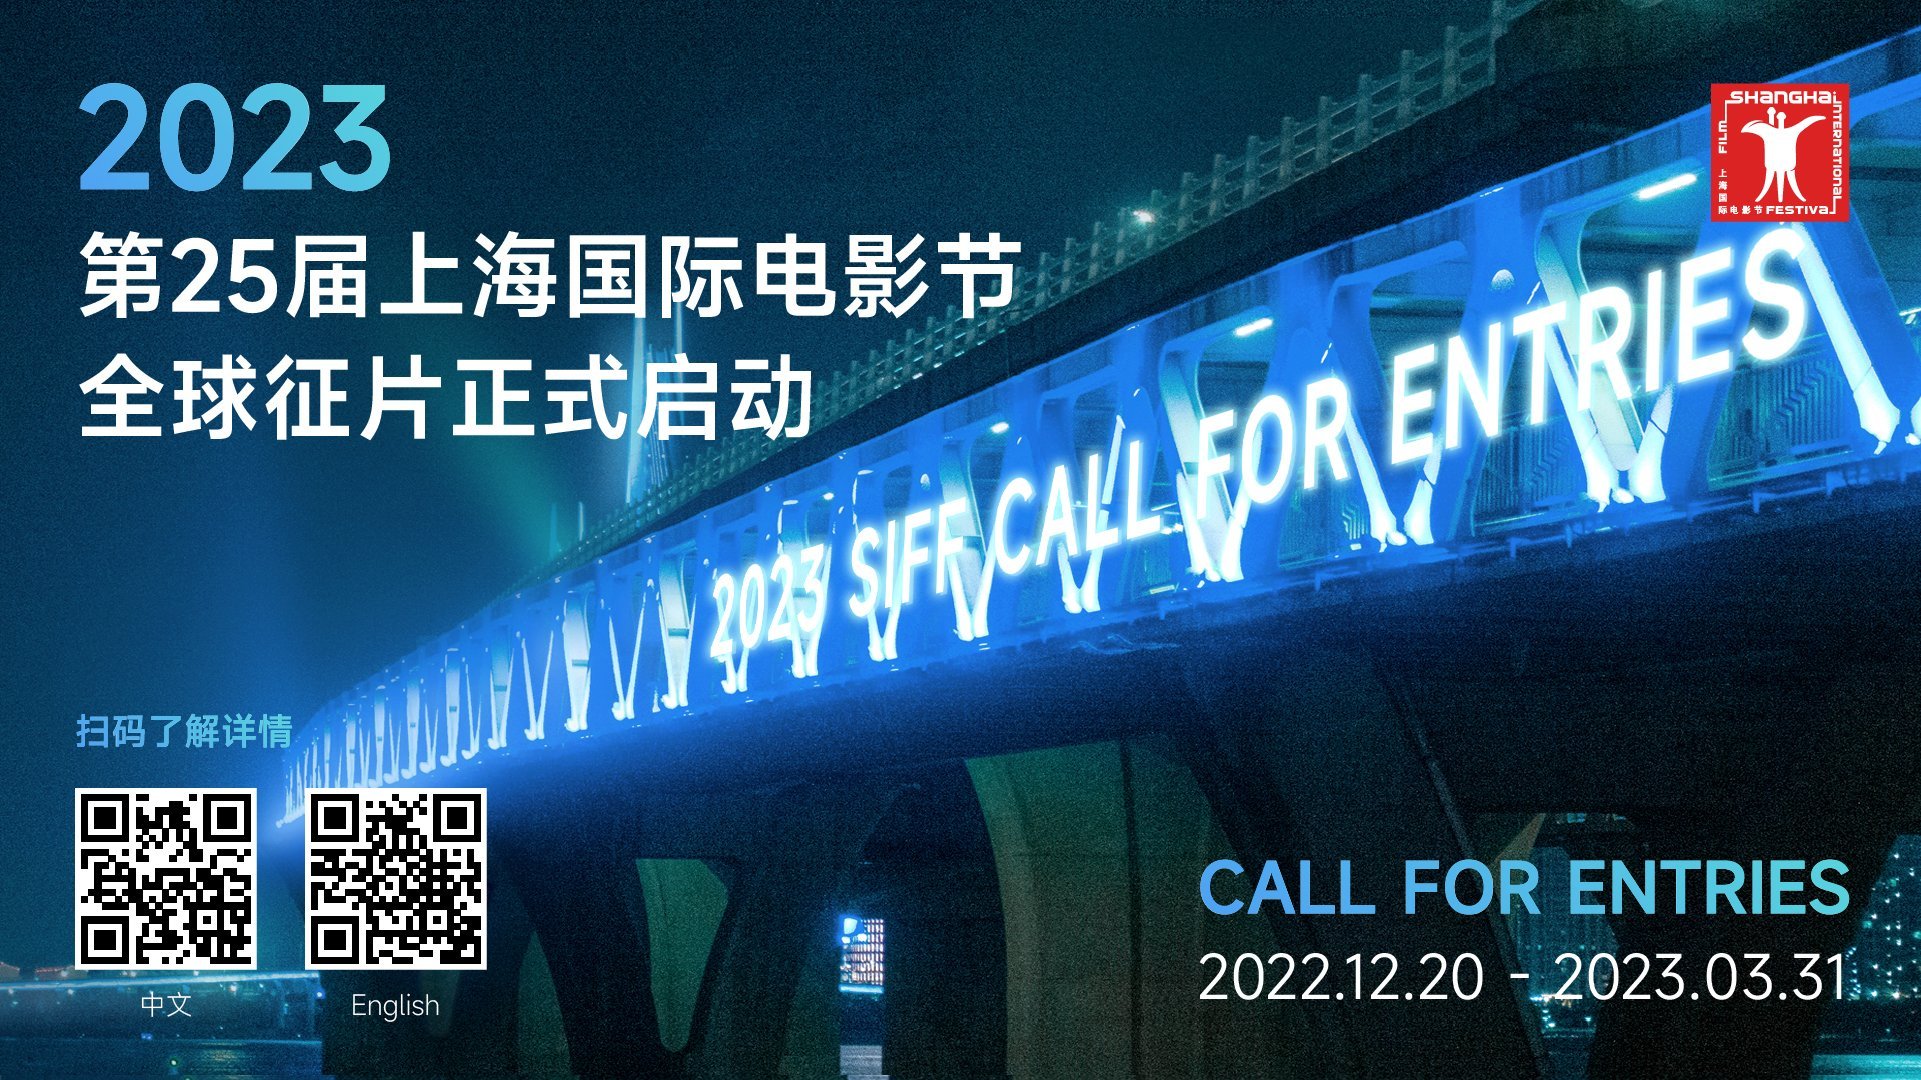 第25届上海国际电影节将于2023年6月举办